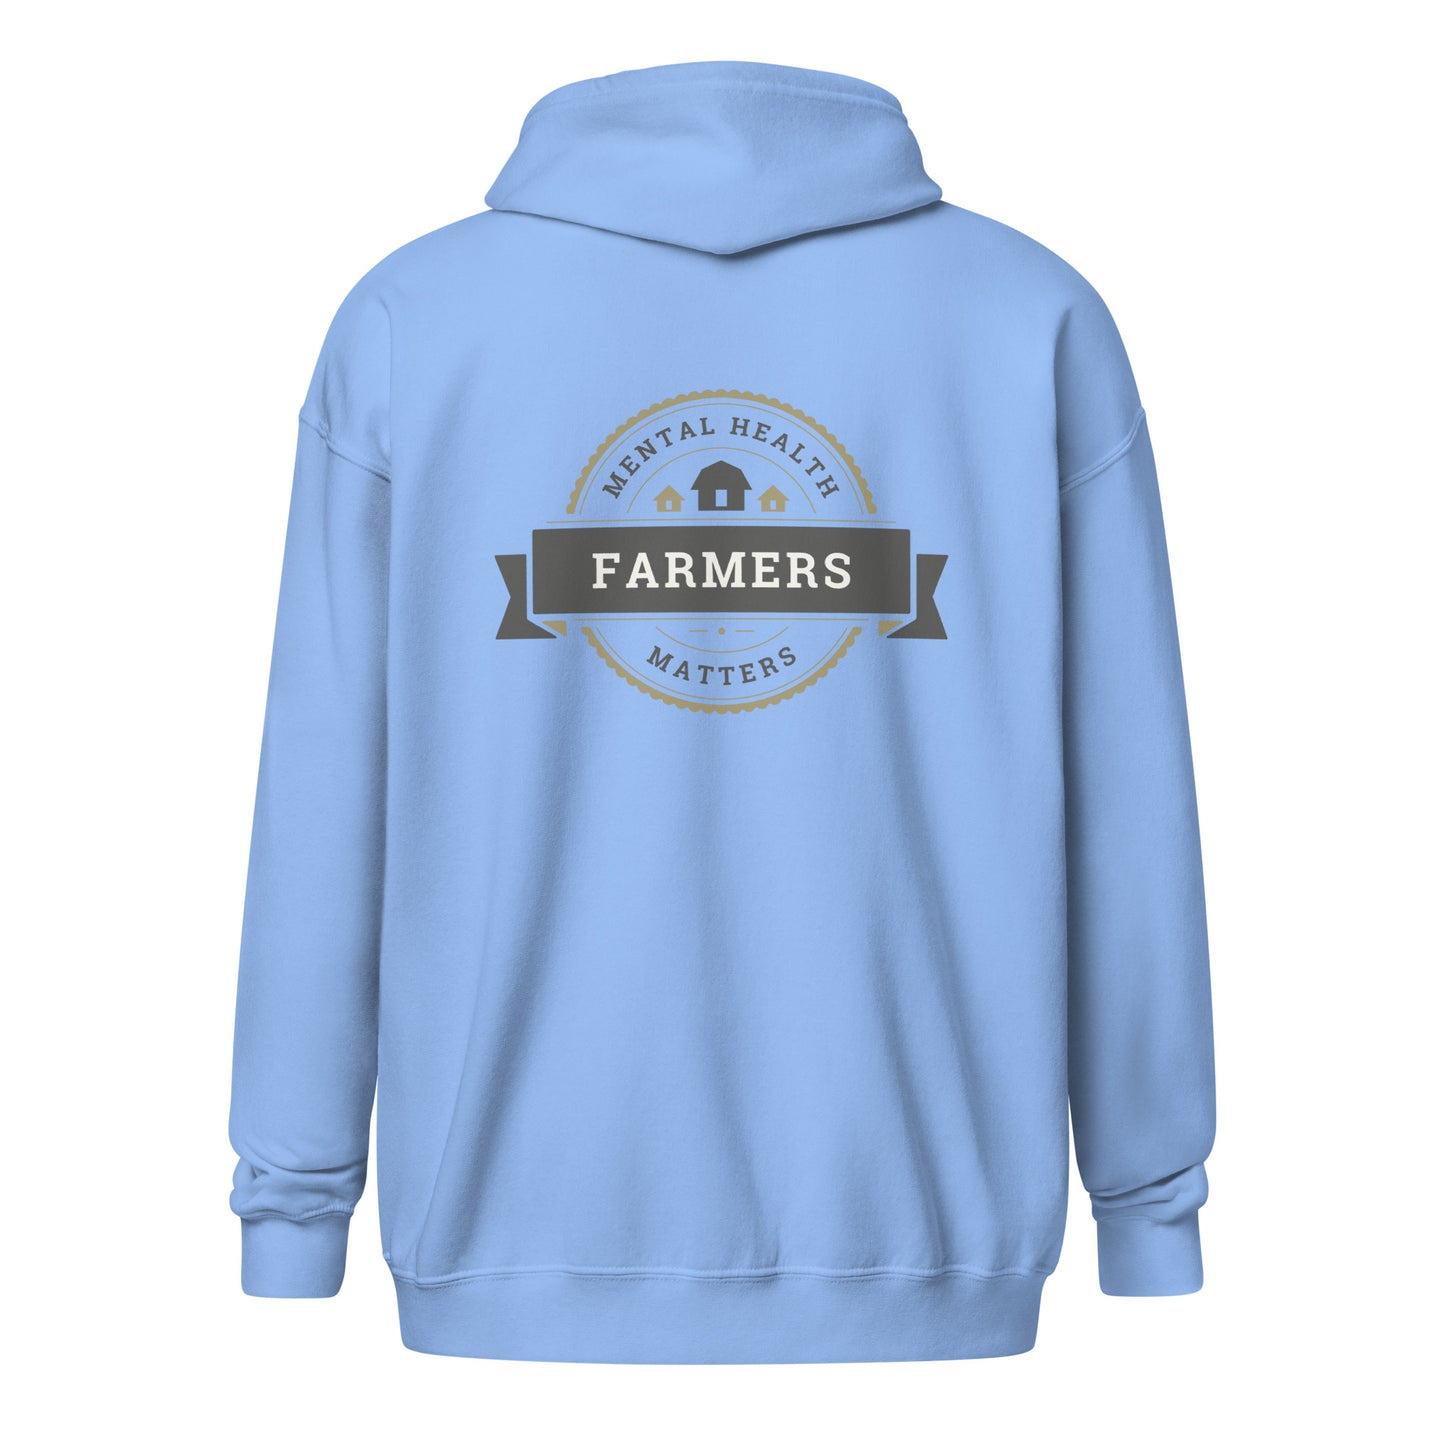 'Farmers' Mental Health Matters' Unisex heavy blend zip hoodie